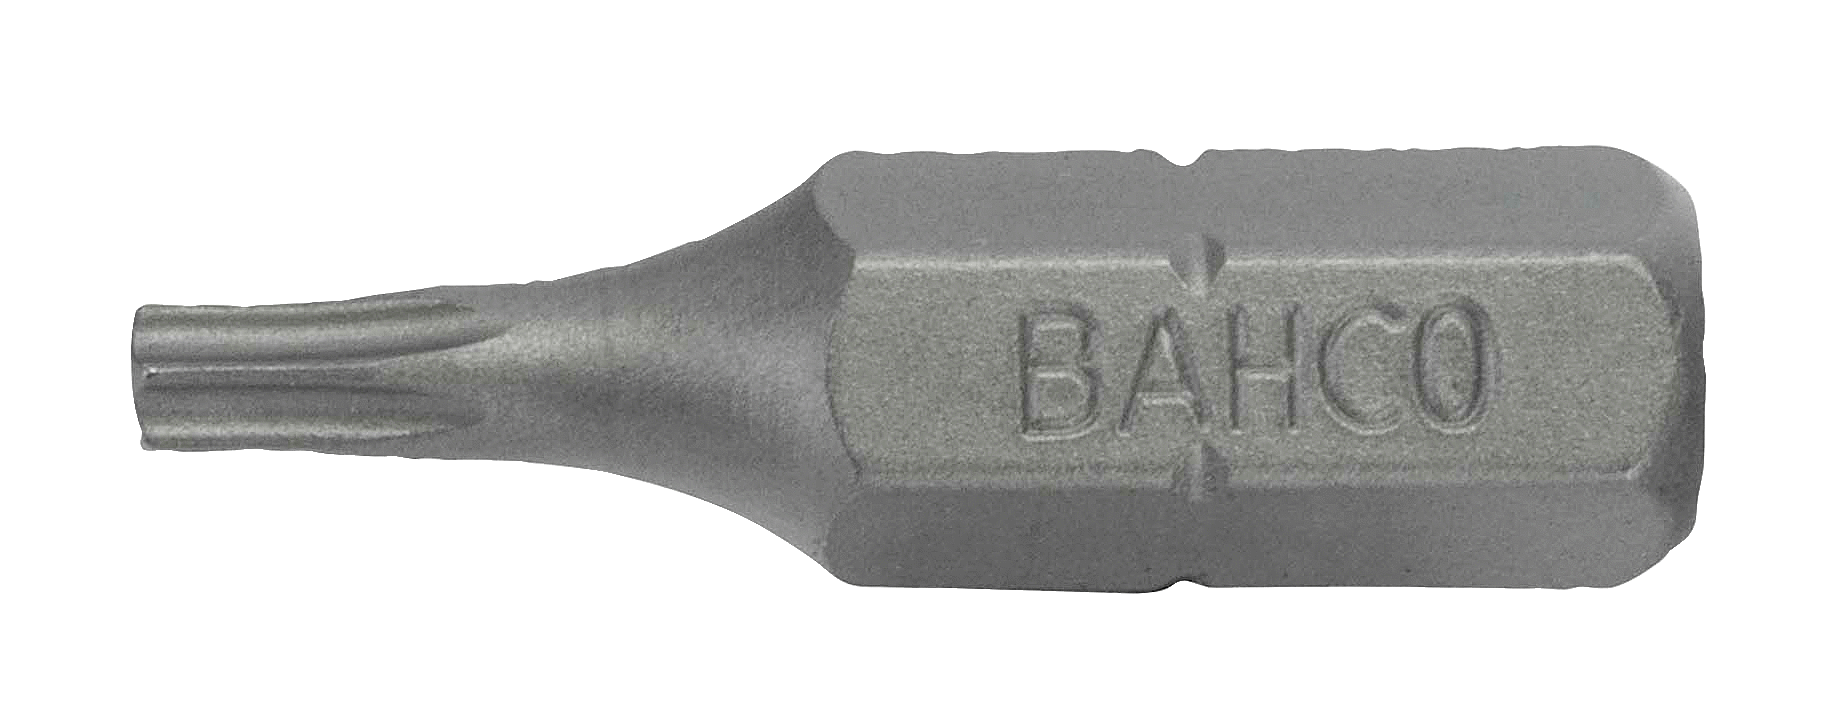 картинка Стандартные биты для отверток Torx®, 25 мм BAHCO 59S/T3 от магазина "Элит-инструмент"